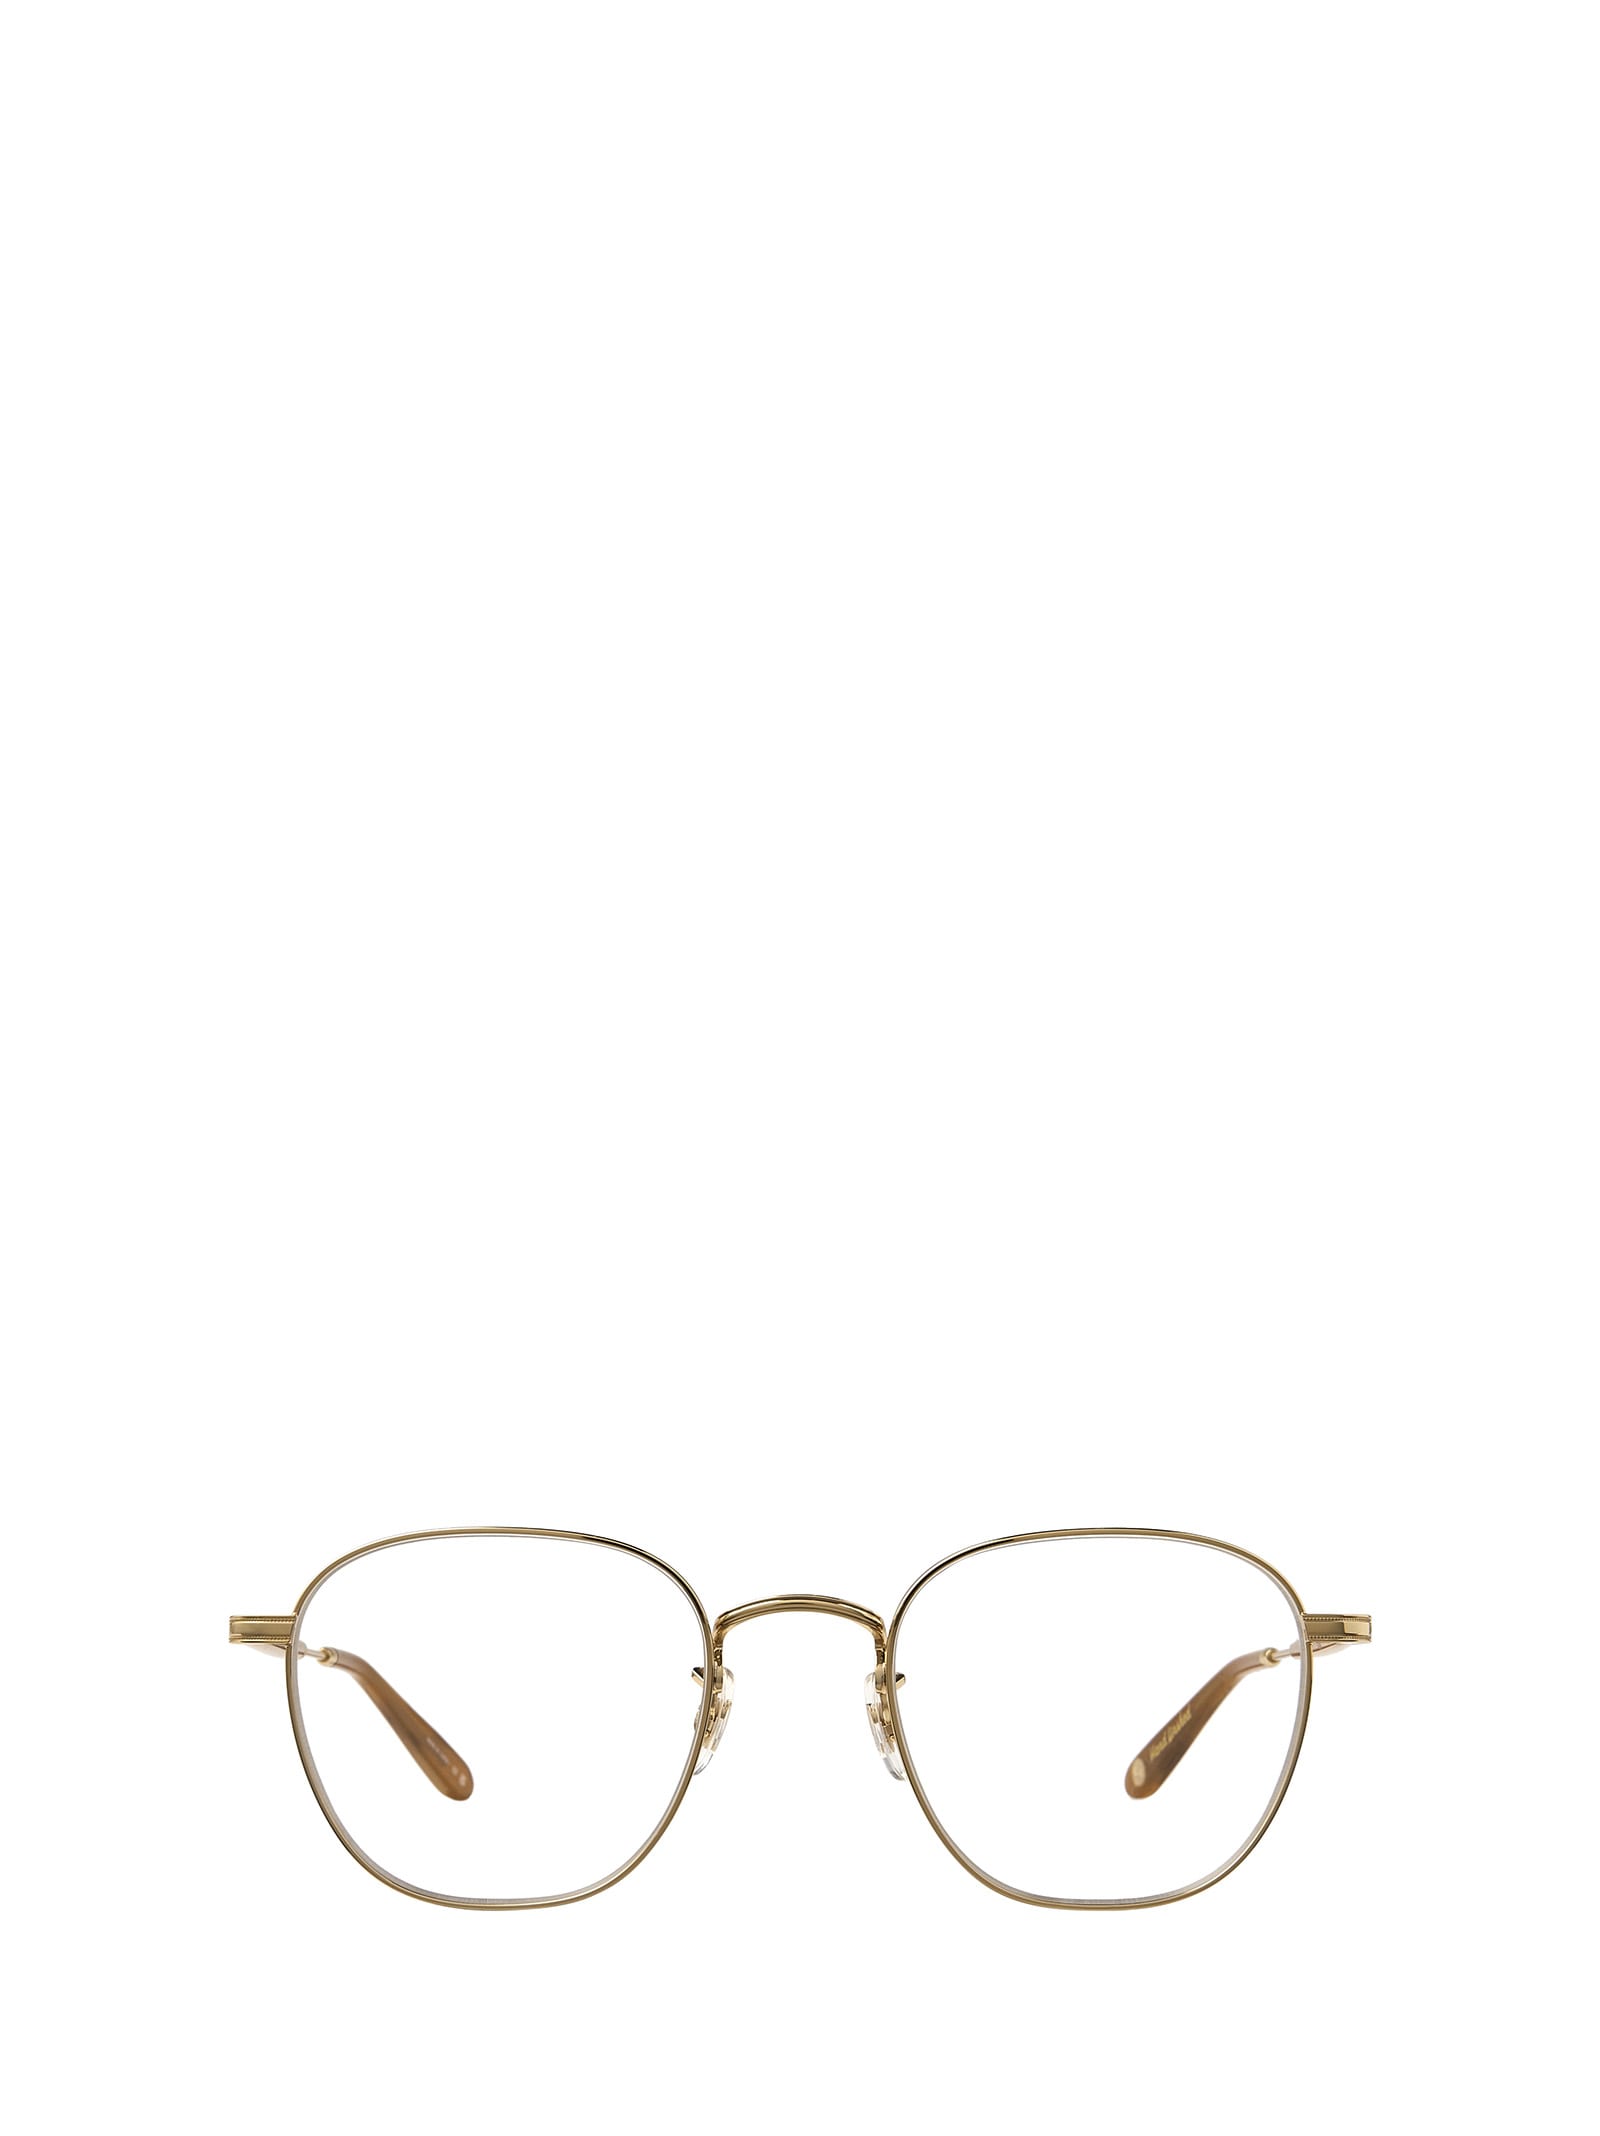 Grant M Gold-sierra Tortoise Glasses